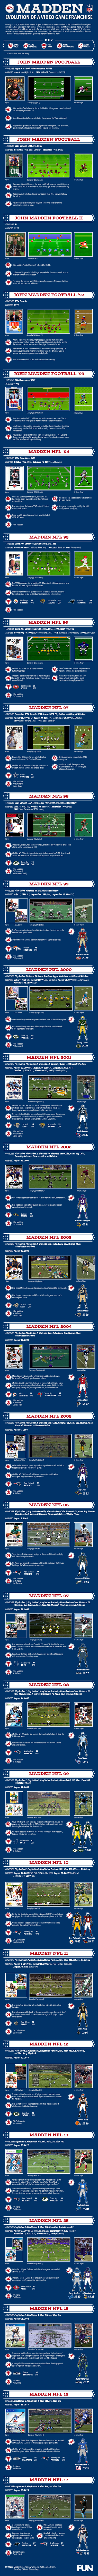 Madden NFL Evolution Infographic